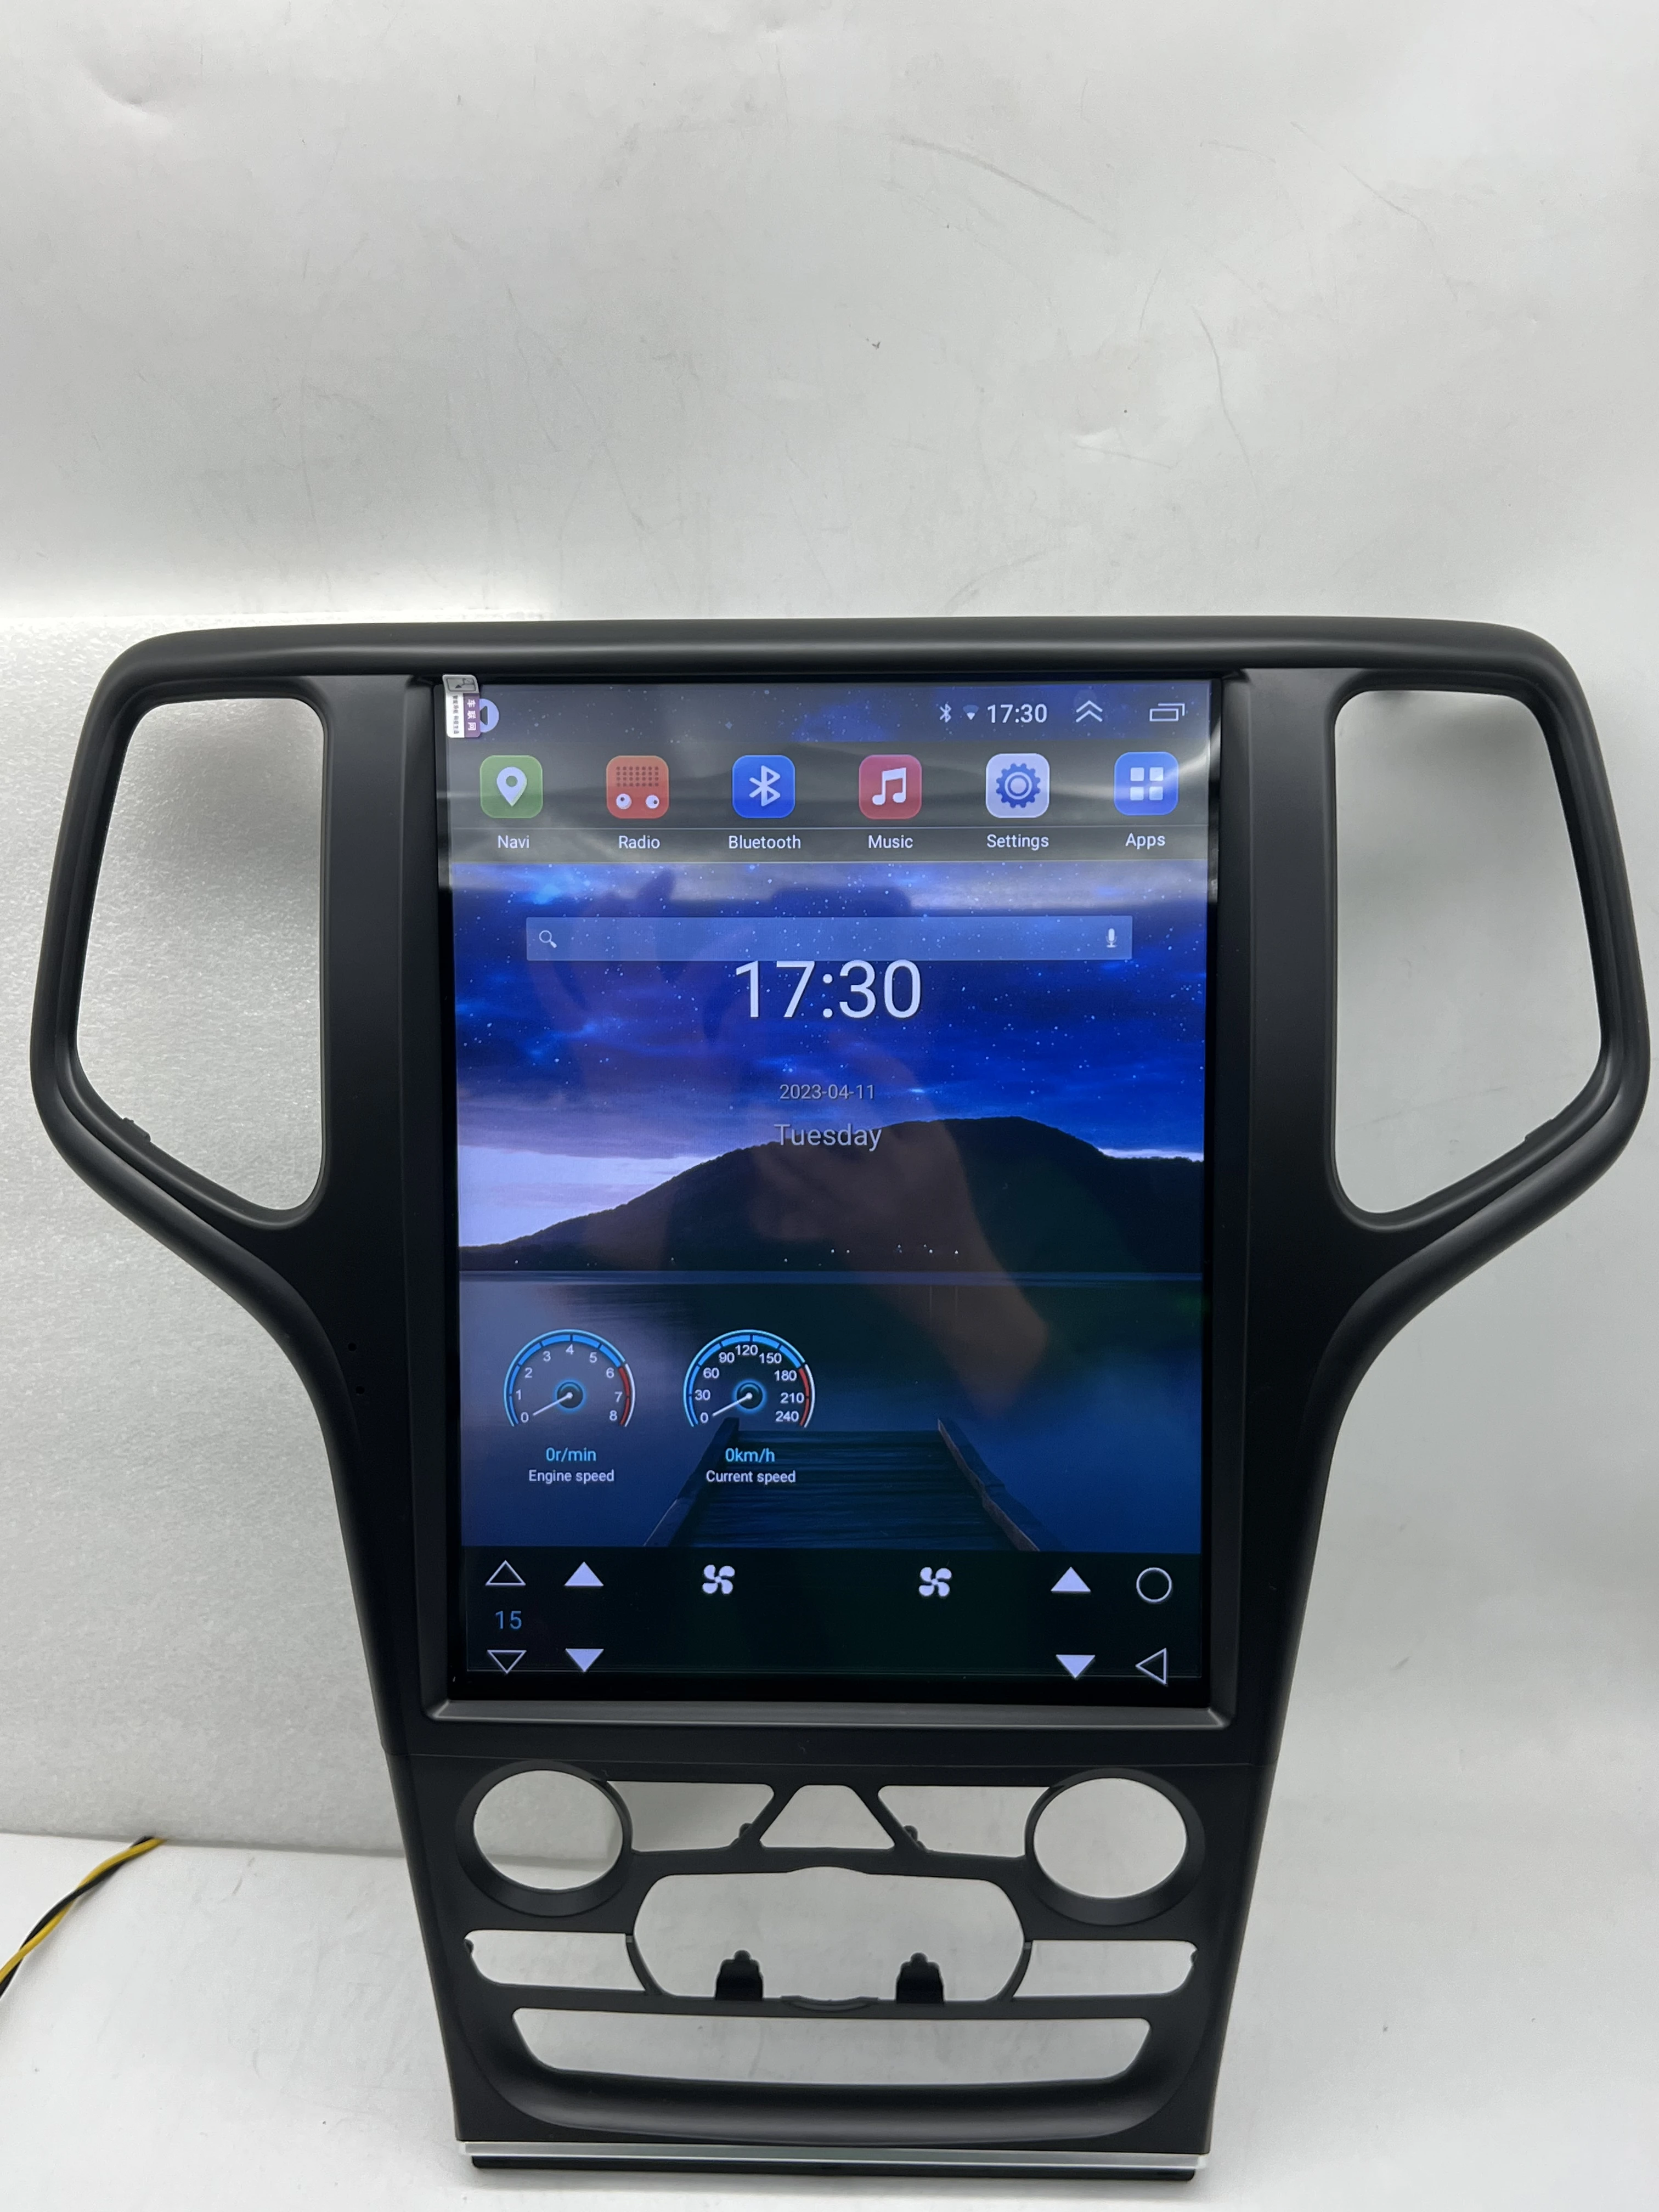 12.1 inç Jeep Grand Cherokee İçin WK2 2014-2020 Araba Multimedya Video Oynatıcı GPS Navigasyon Radyo 8 Çekirdekli 6 + 128G Android 12 Carplay